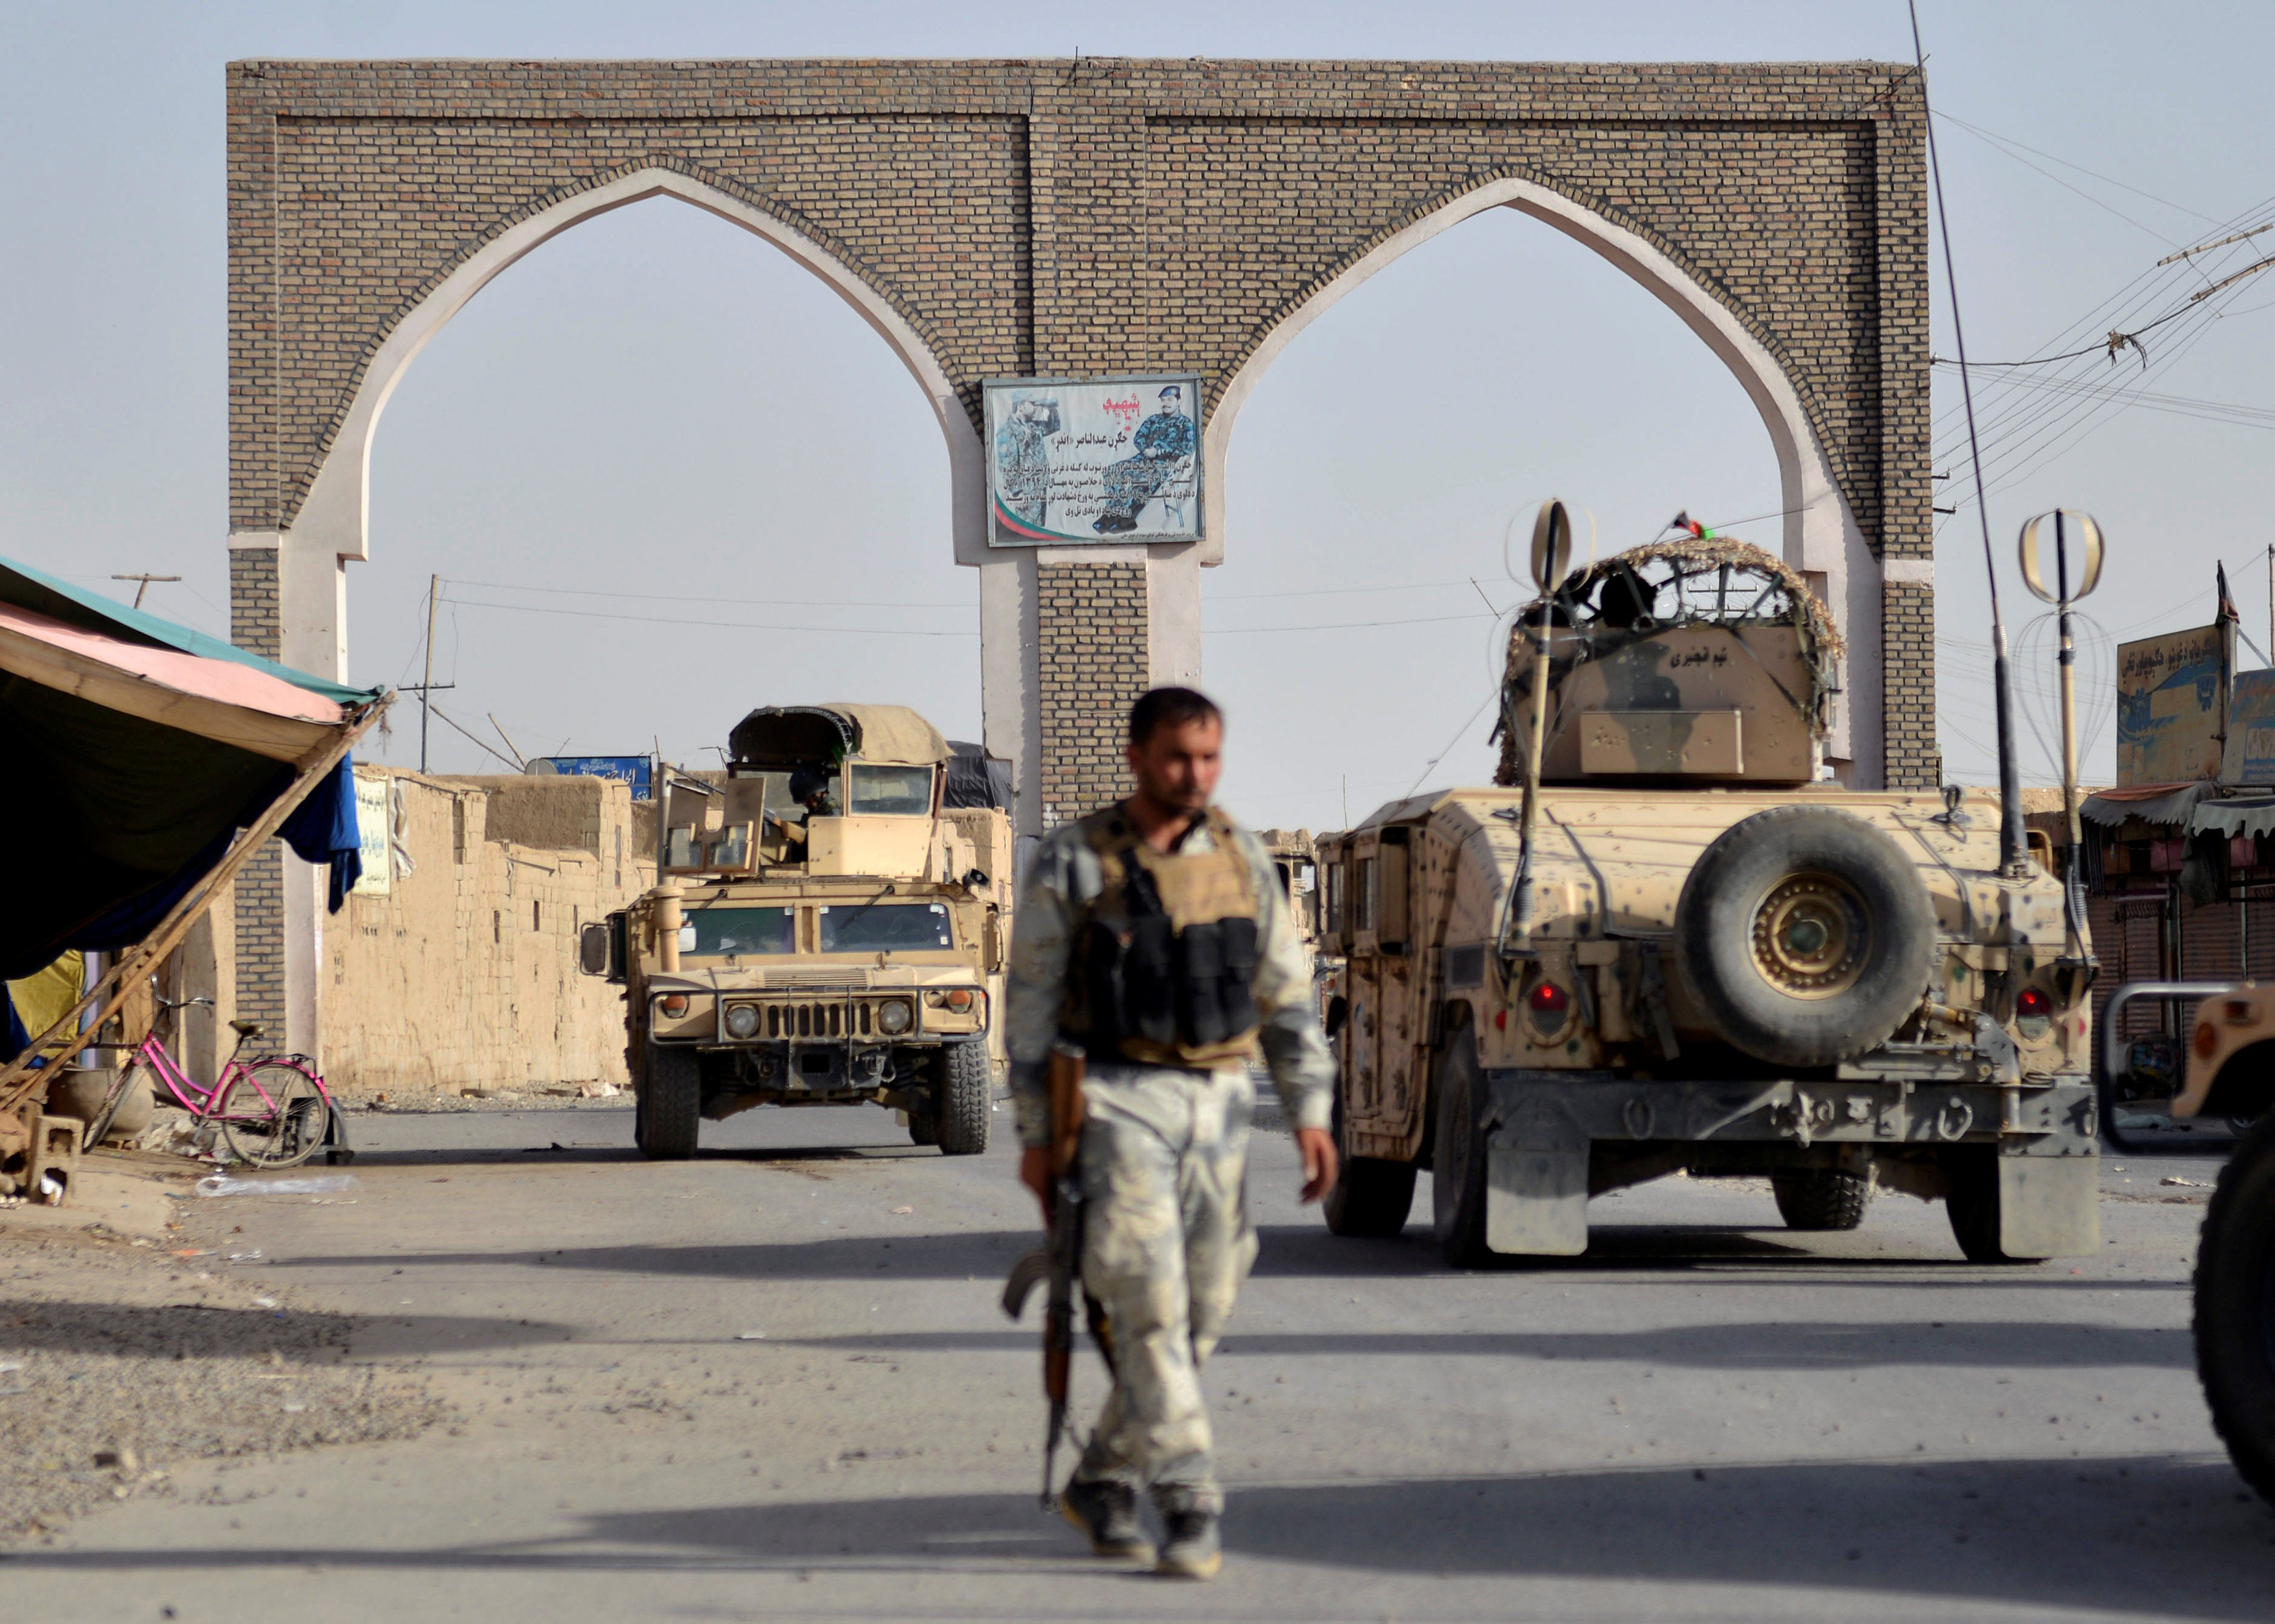 رجل أمن أفغاني يمر بمحاذاة مركبات عسكرية في وقت ينفذ فيه متشددو طابان هجمات أسفرت عن سقوط قتلى، 12 أغسطس 2018. رويترز 